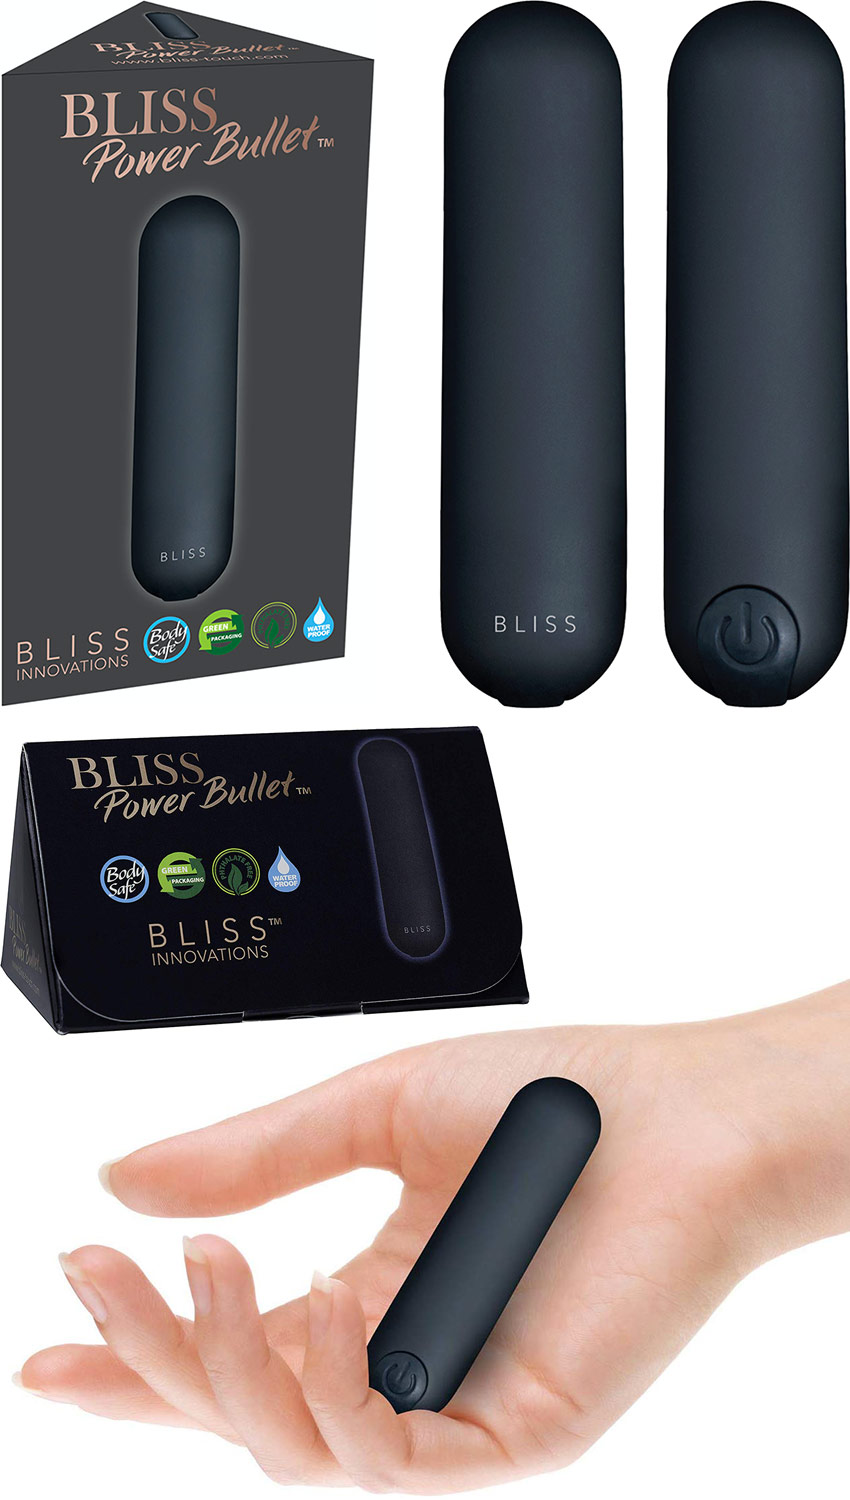 Bliss Power Bullet bullet vibrator - Black